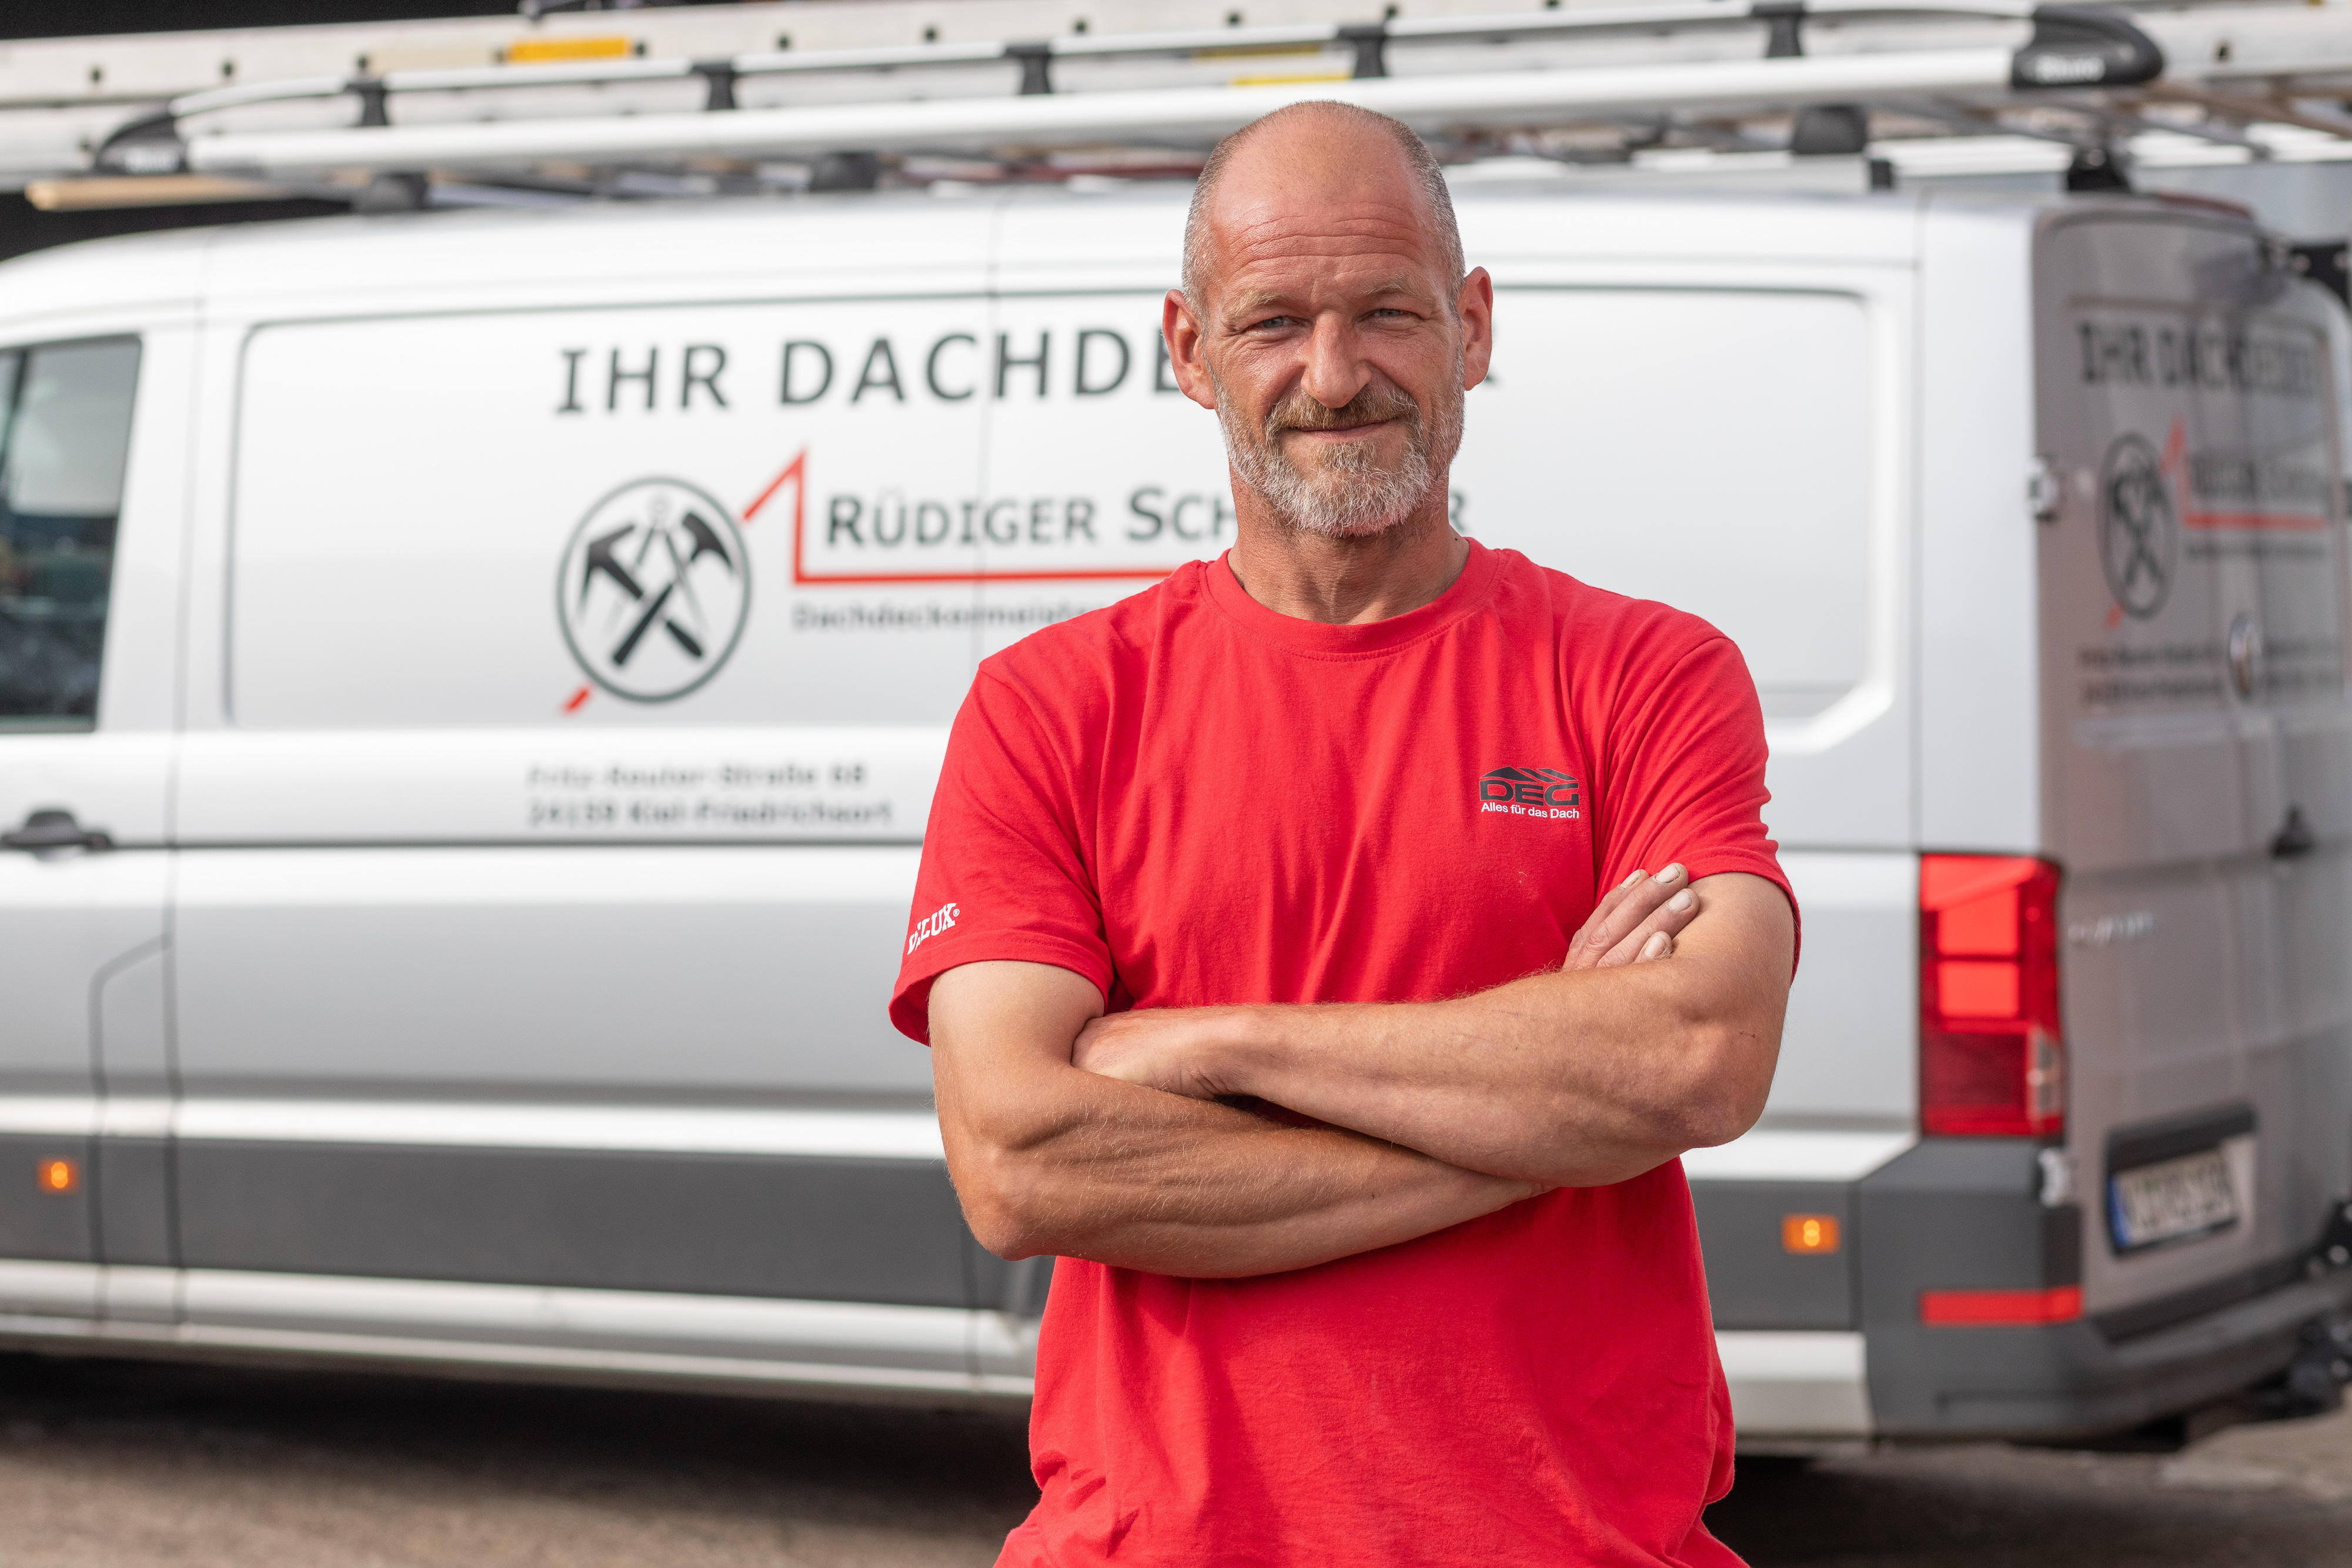 Bilder Rüdiger Schröder Dachdeckermeister & Hochbautechniker GmbH